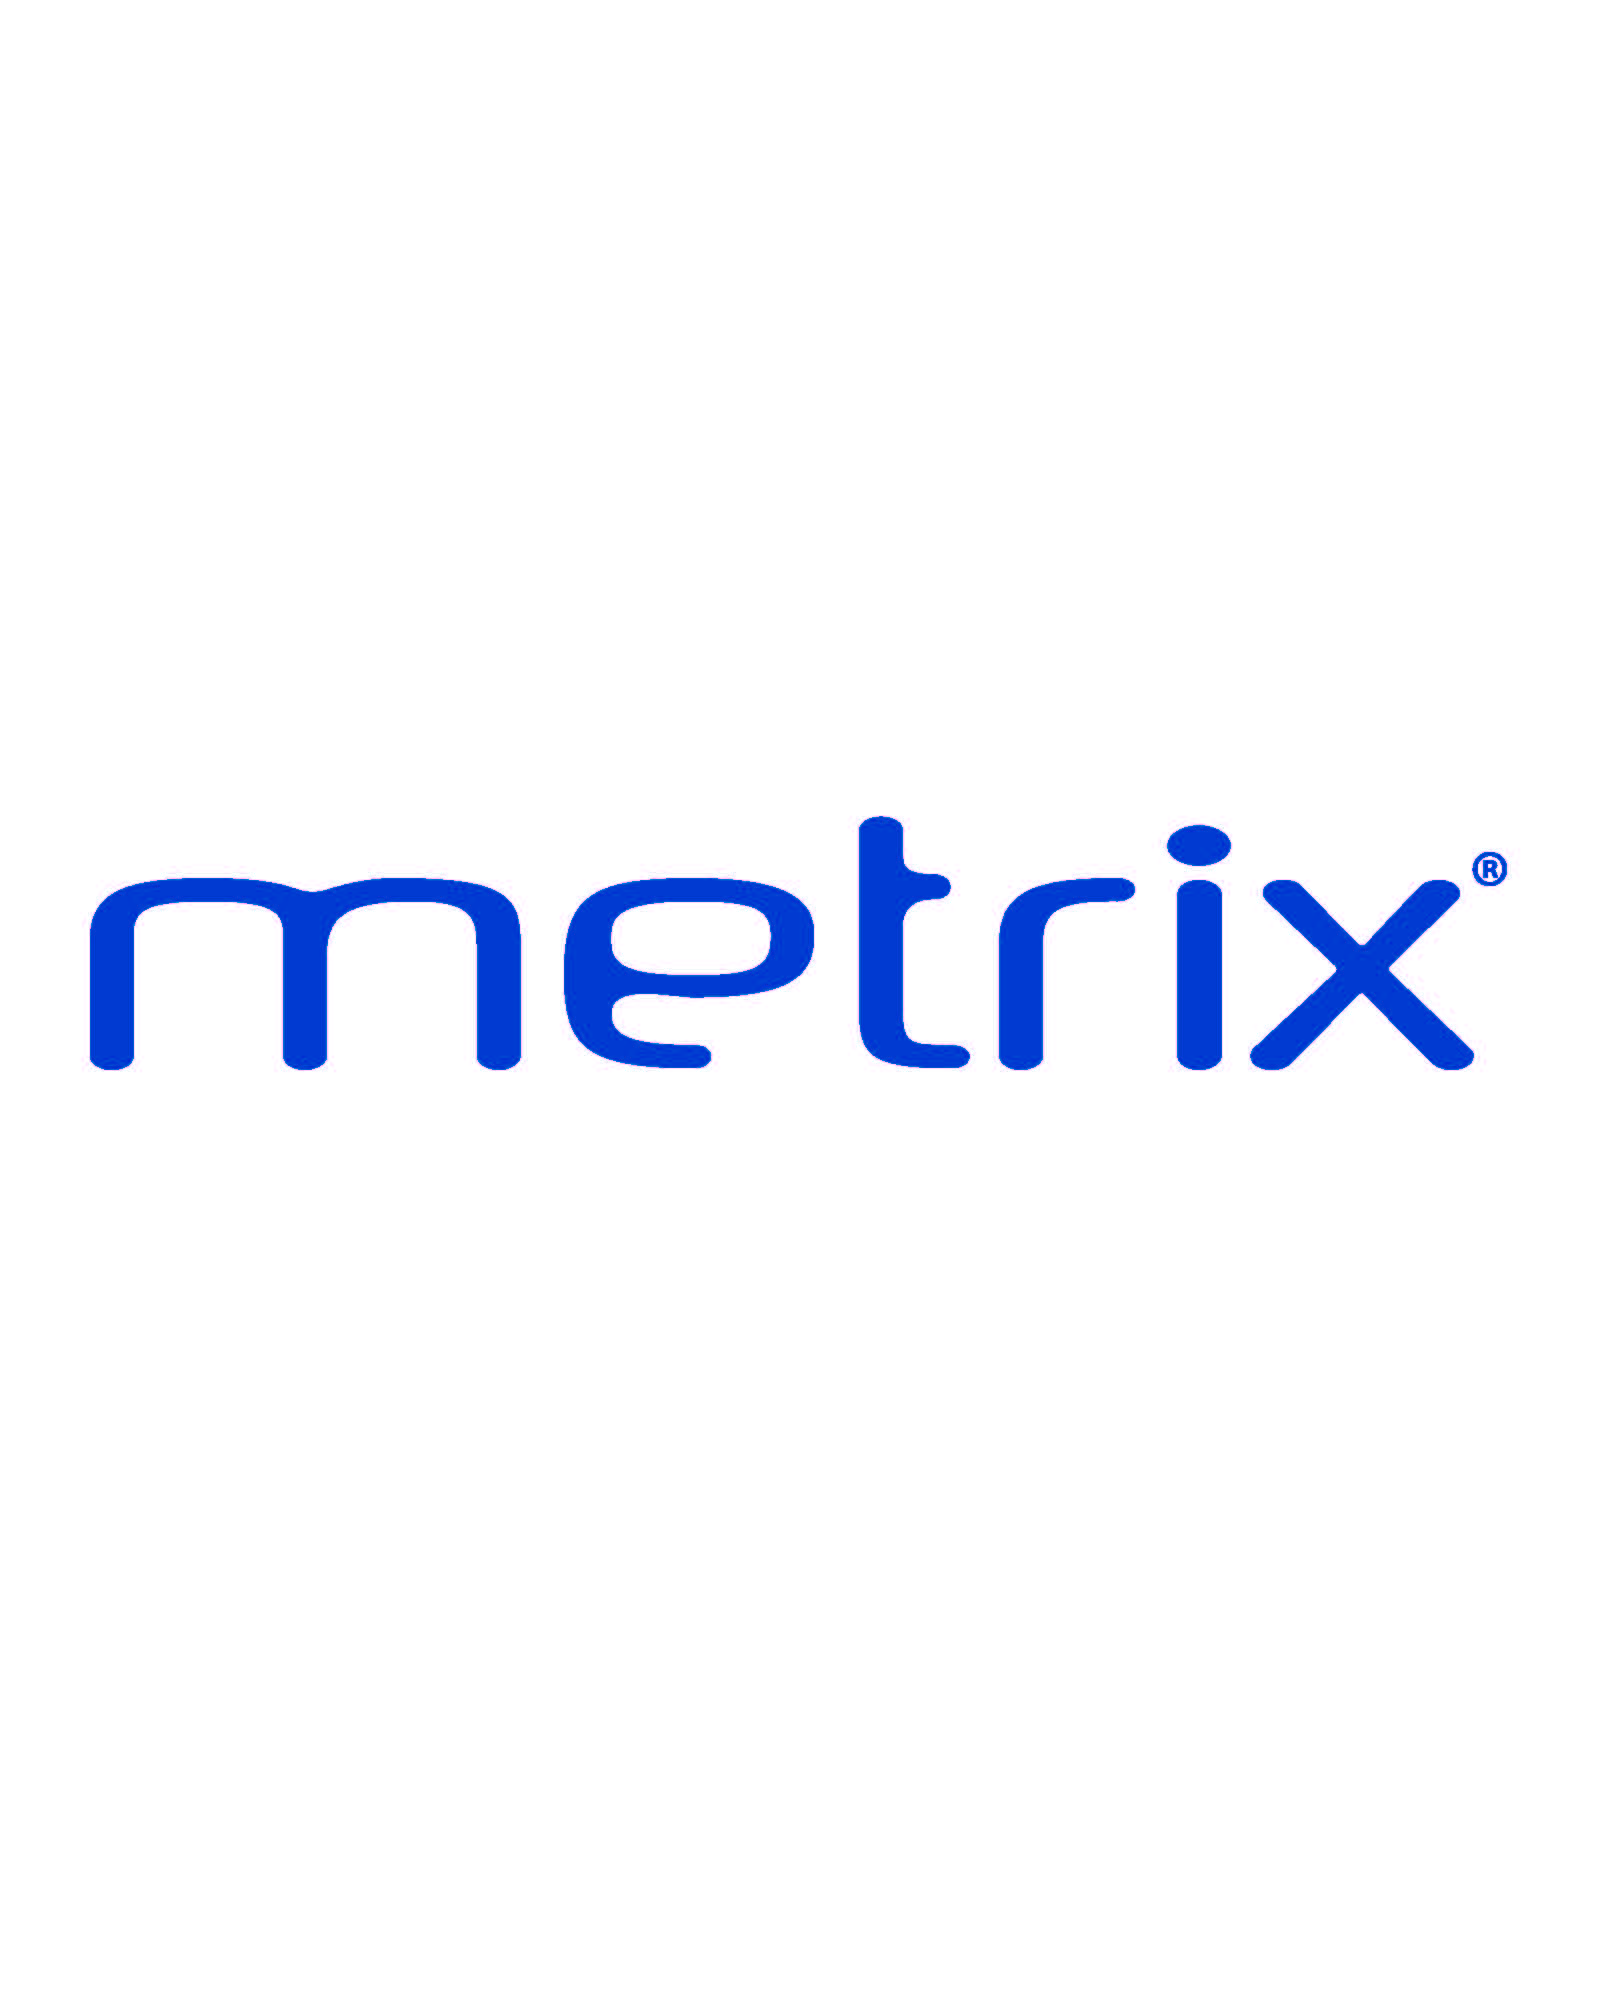 Metrix 2013.0 Set to Debut at Print 13